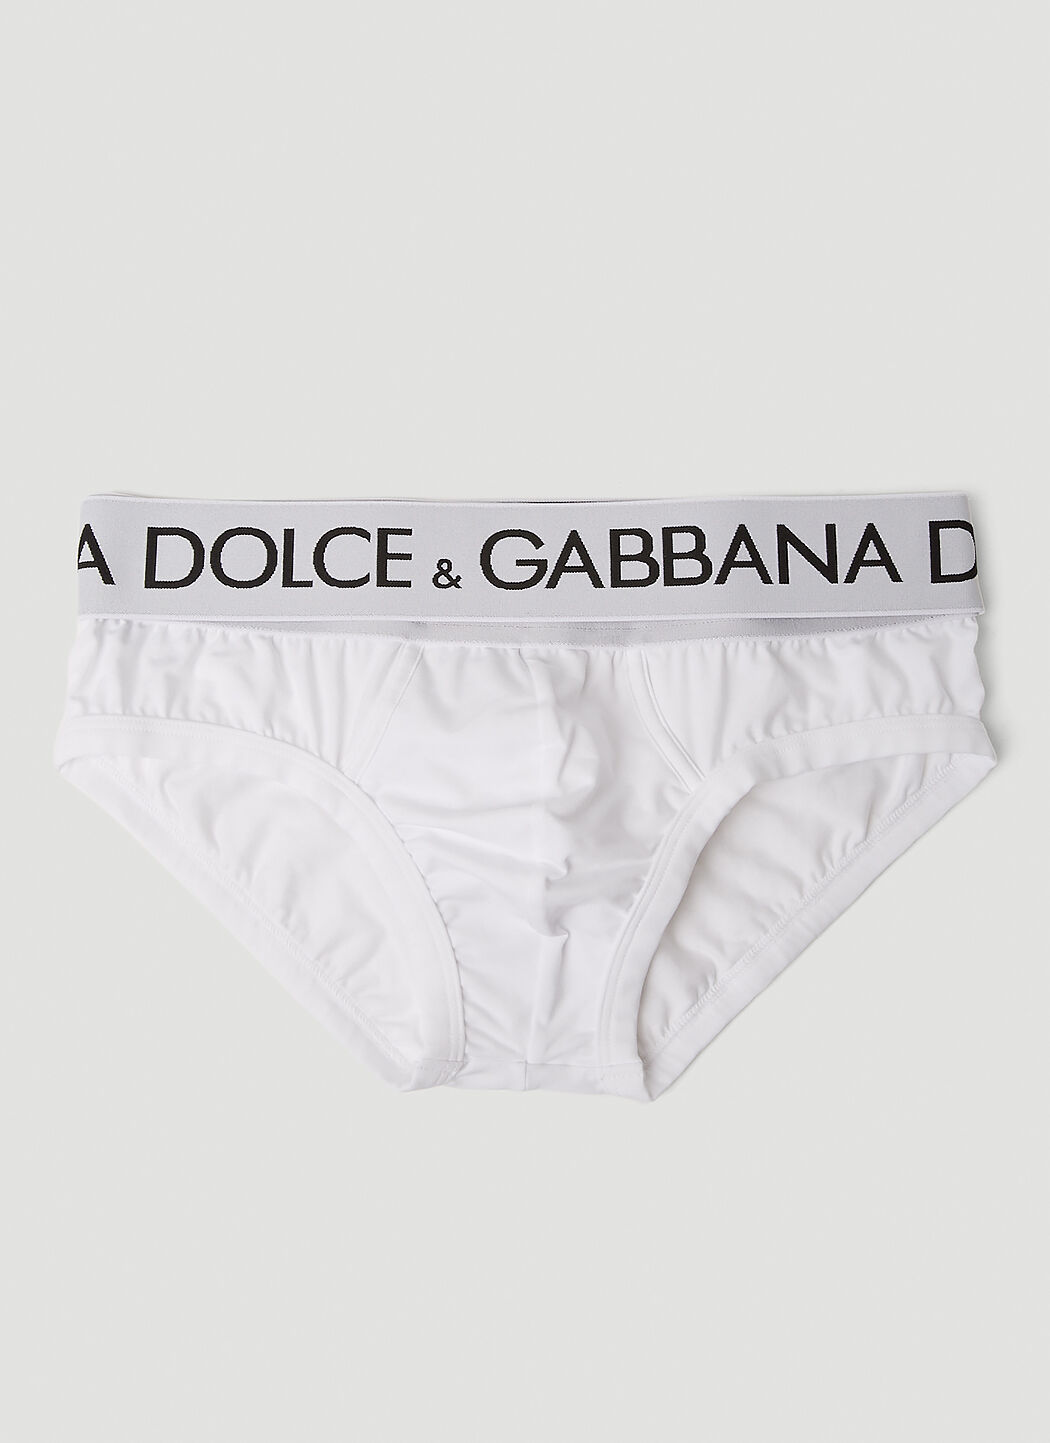 Dolce & Gabbana 徽标裤腰内裤 黑色 dol0156003